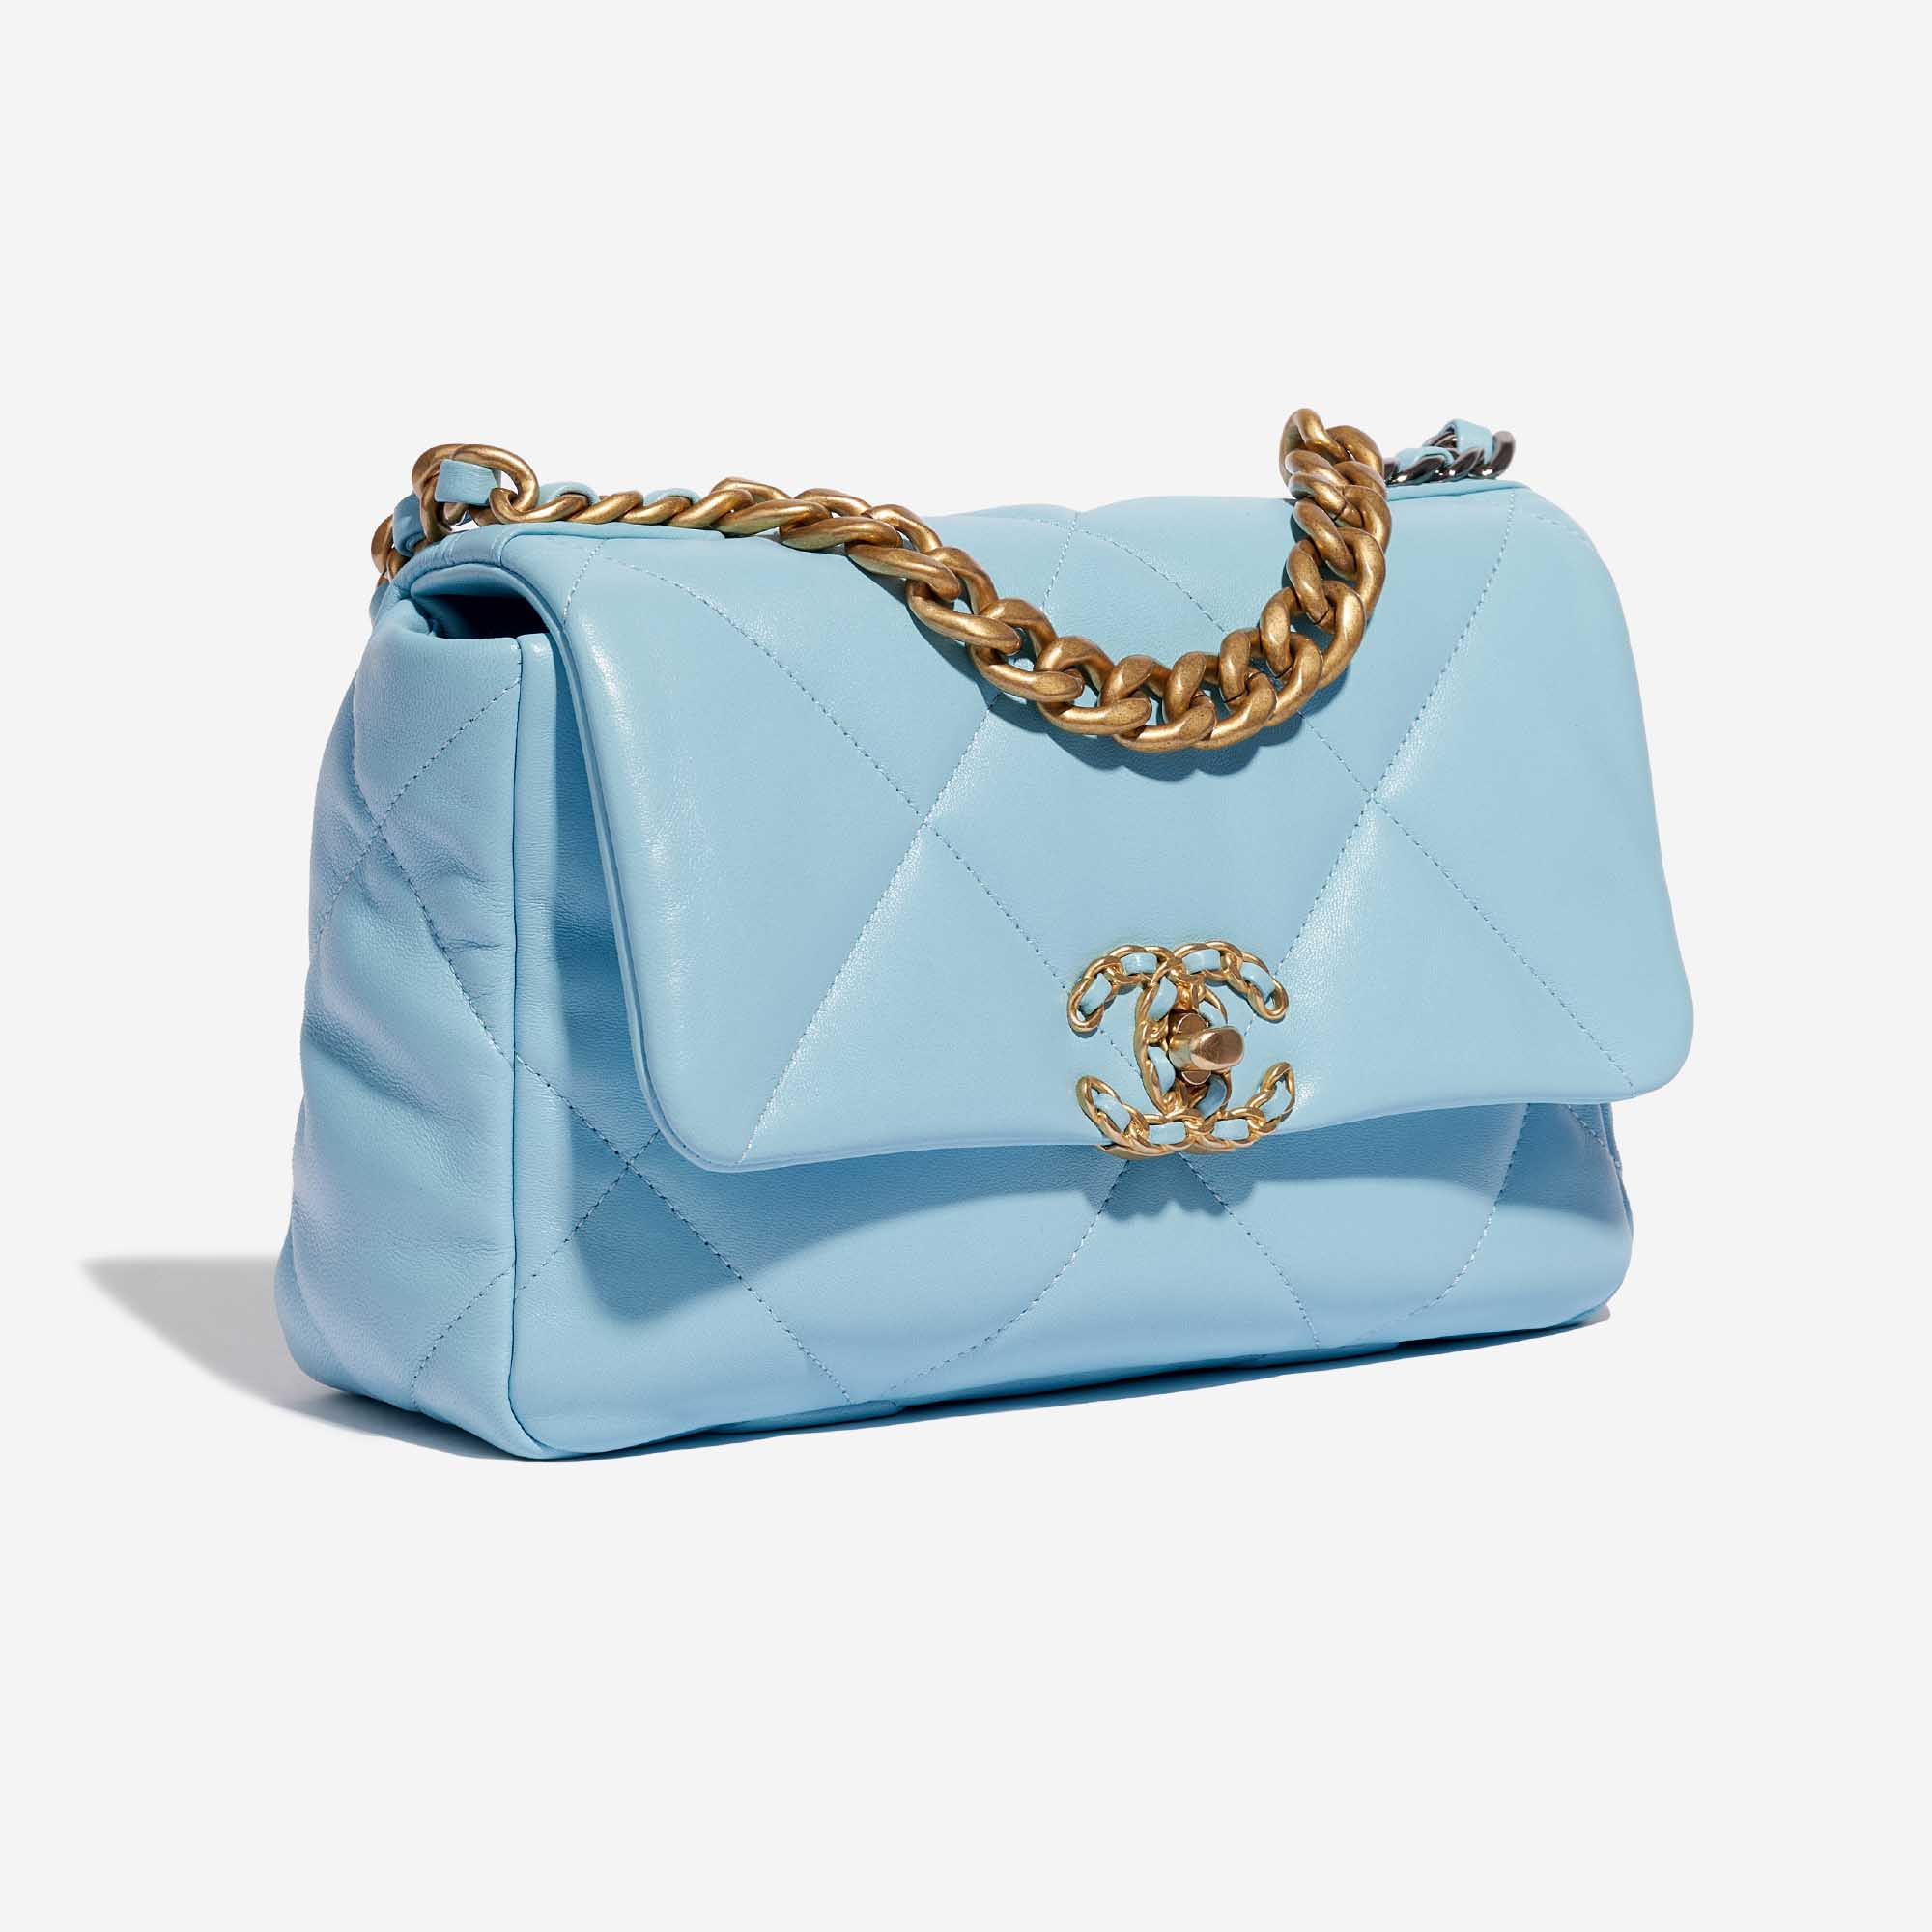 Pre-owned Chanel Tasche 19 Flap Bag Lammleder Sky Blue Blue Side Front | Verkaufen Sie Ihre Designer-Tasche auf Saclab.com